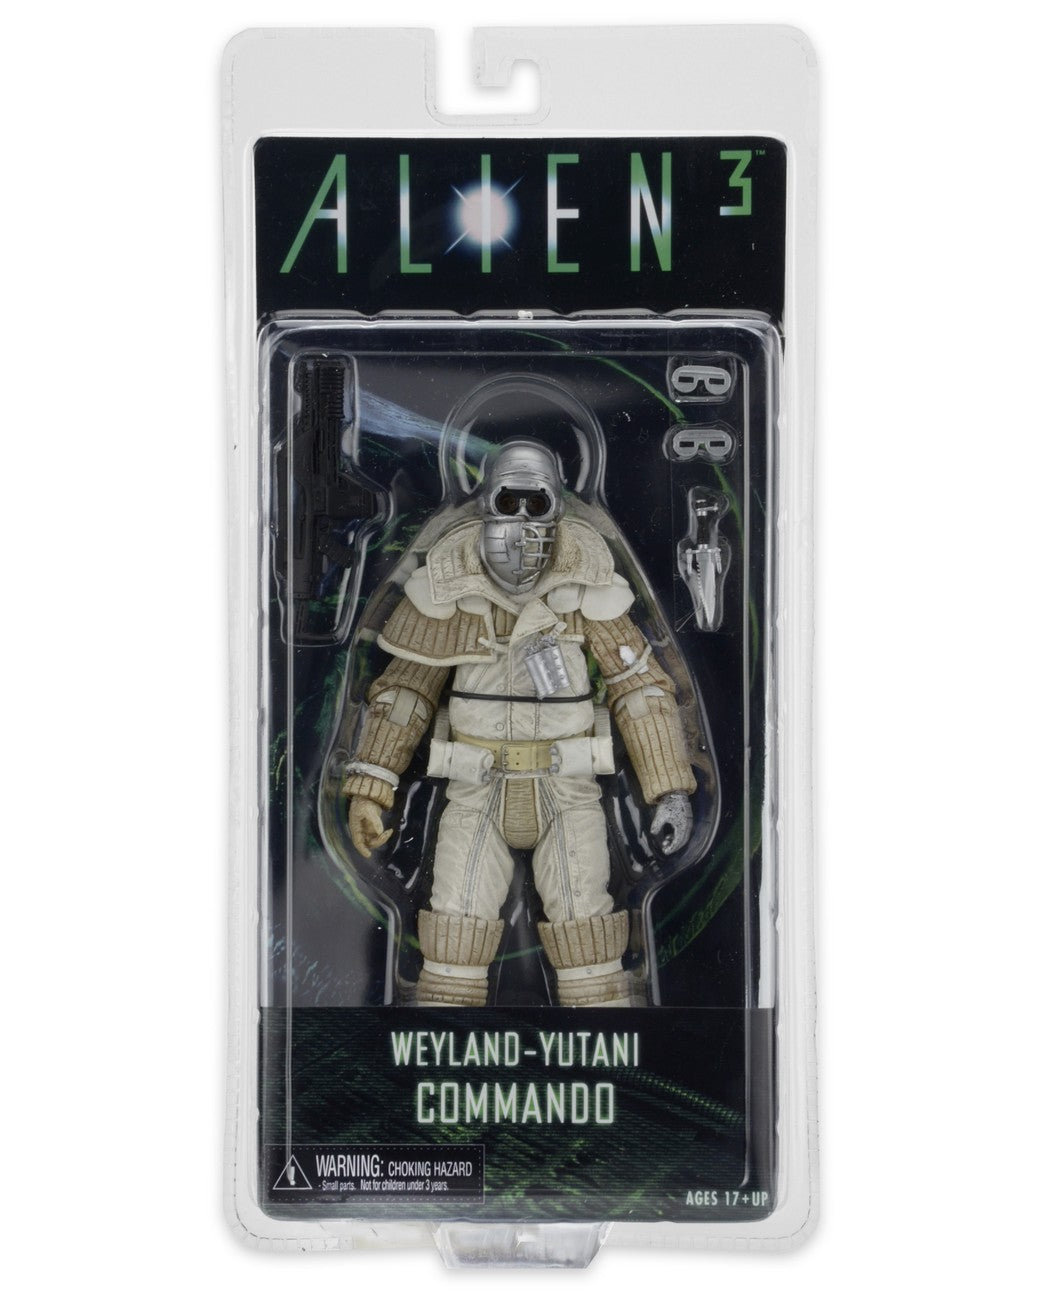 Aliens series 8 Alien 3 Weyland Yutani Commando action figure